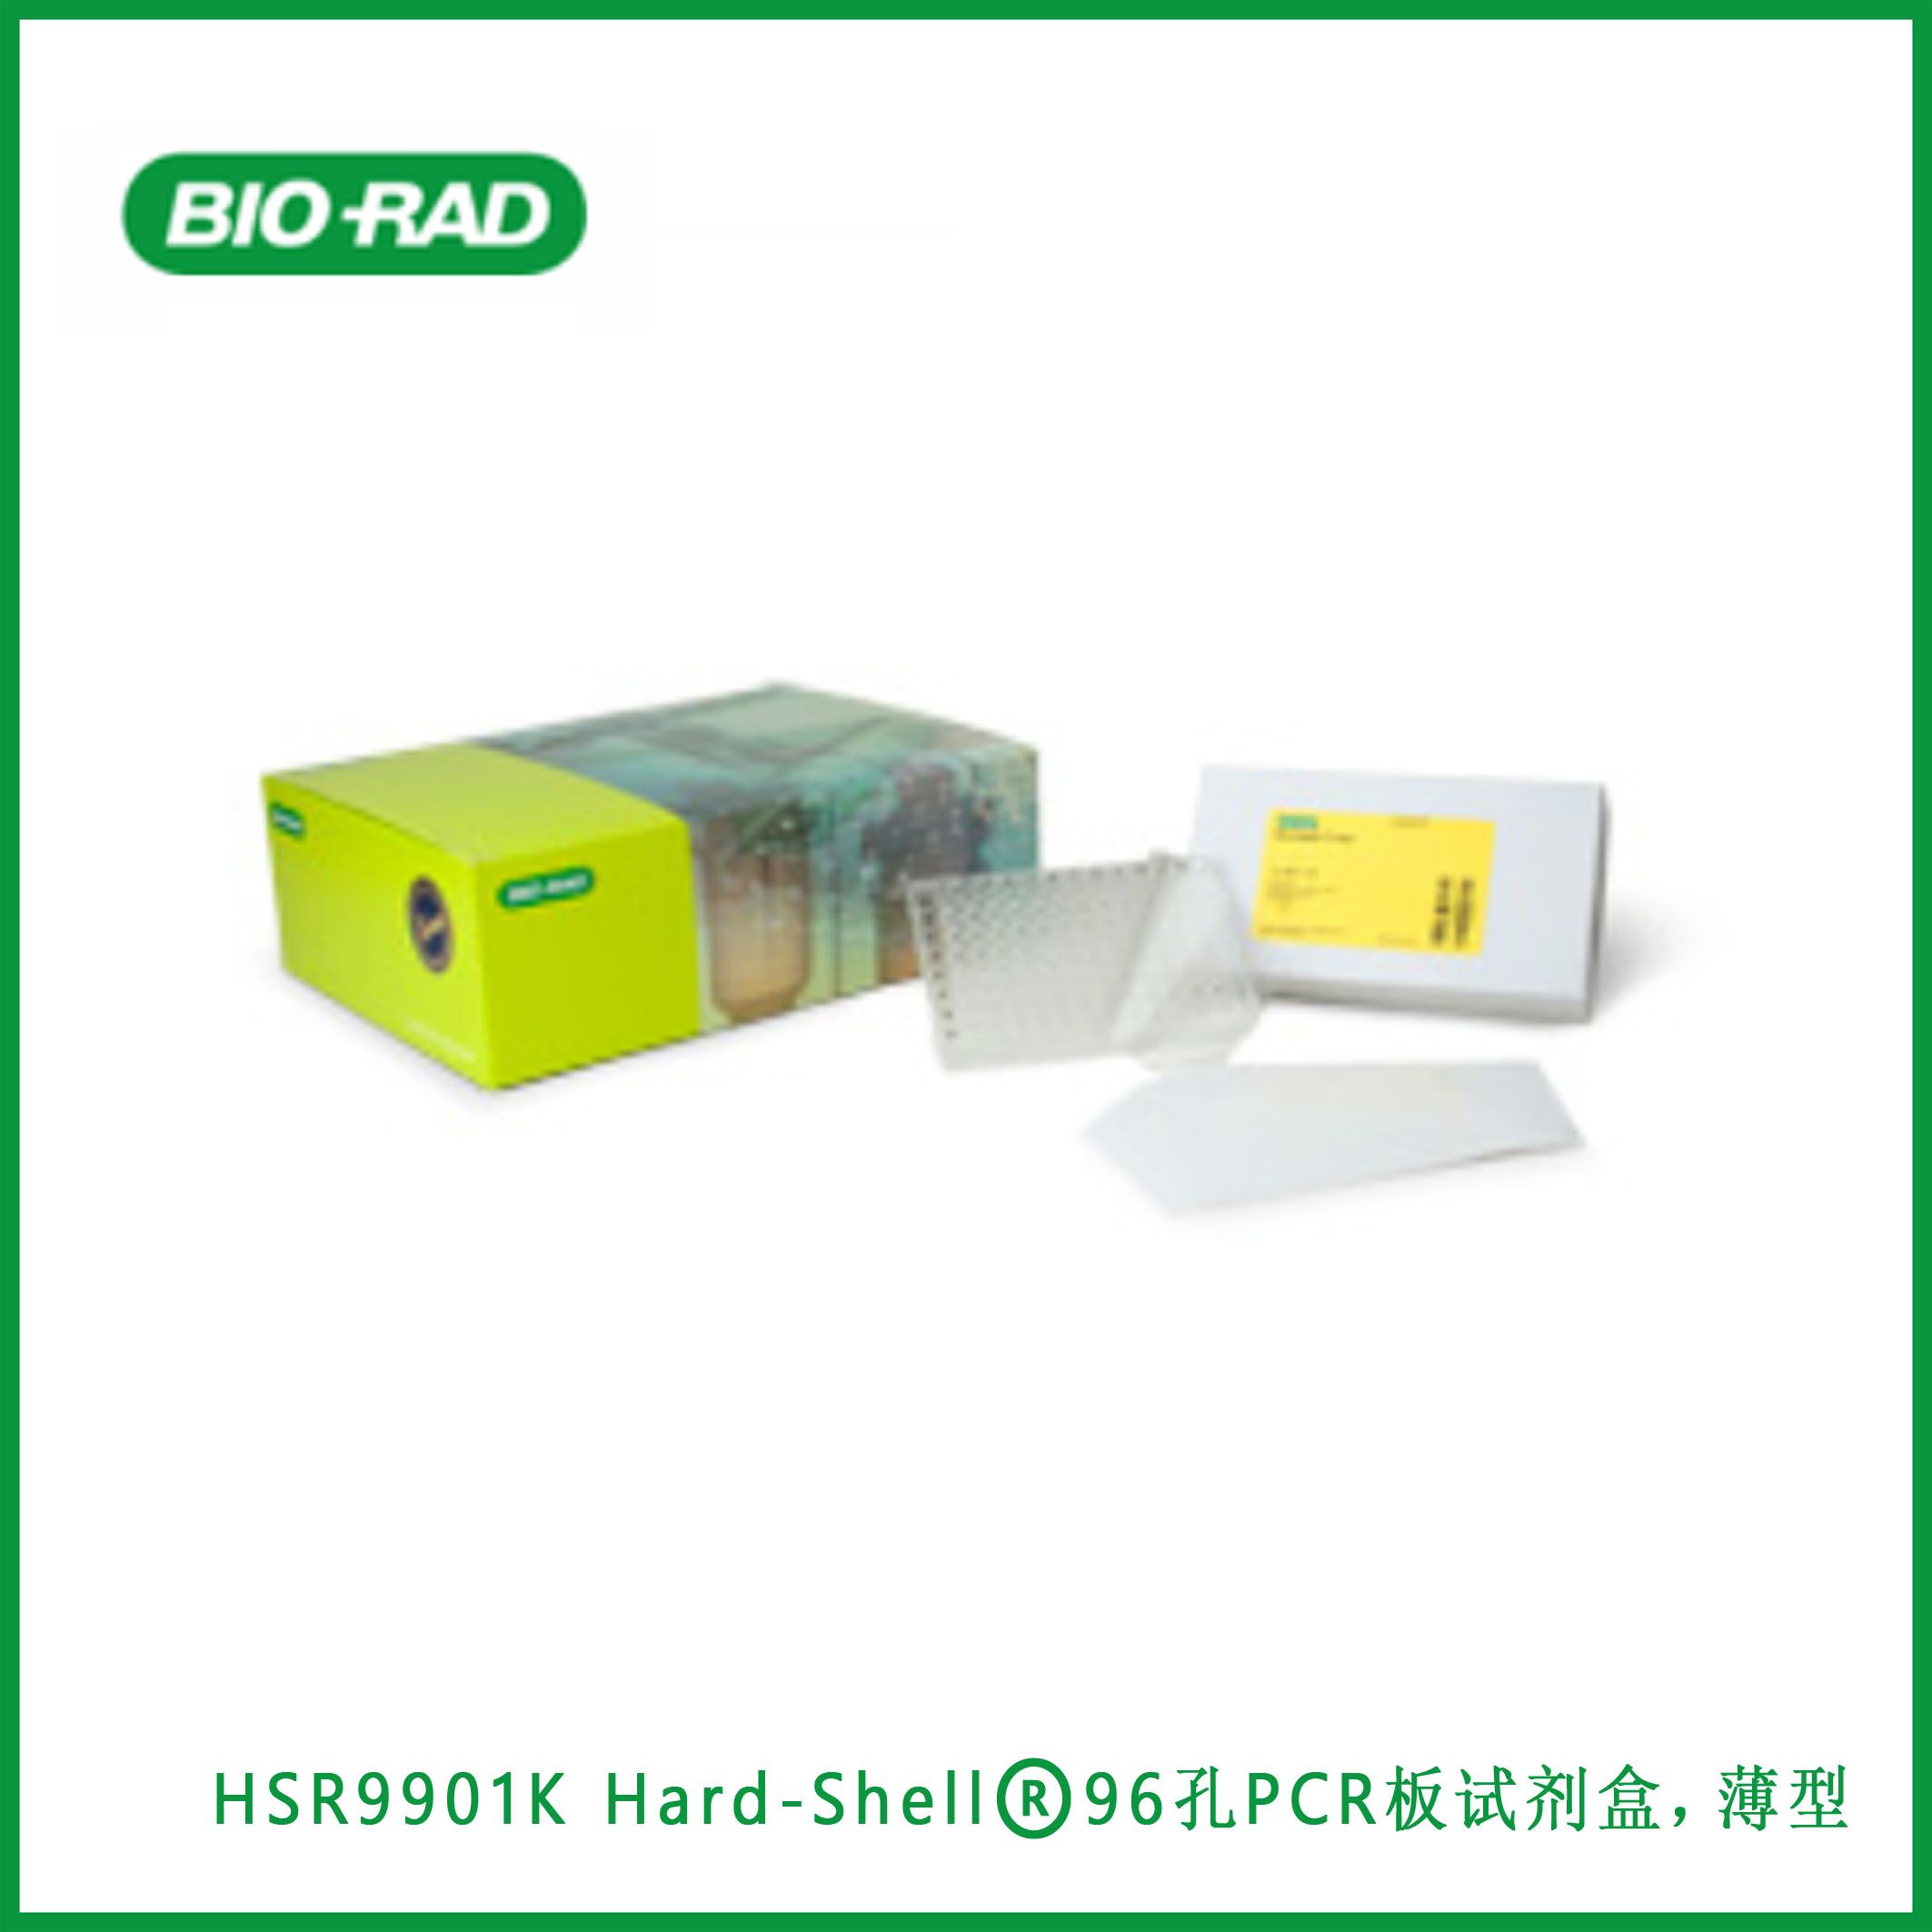 伯乐Bio-RadHSR9901K Hard-Shell® 96-Well PCR Plates Kit, low profile, clear/clear, barcoded, Hard-Shell®96孔PCR板试剂盒，薄型，透明/透明，条形码,现货